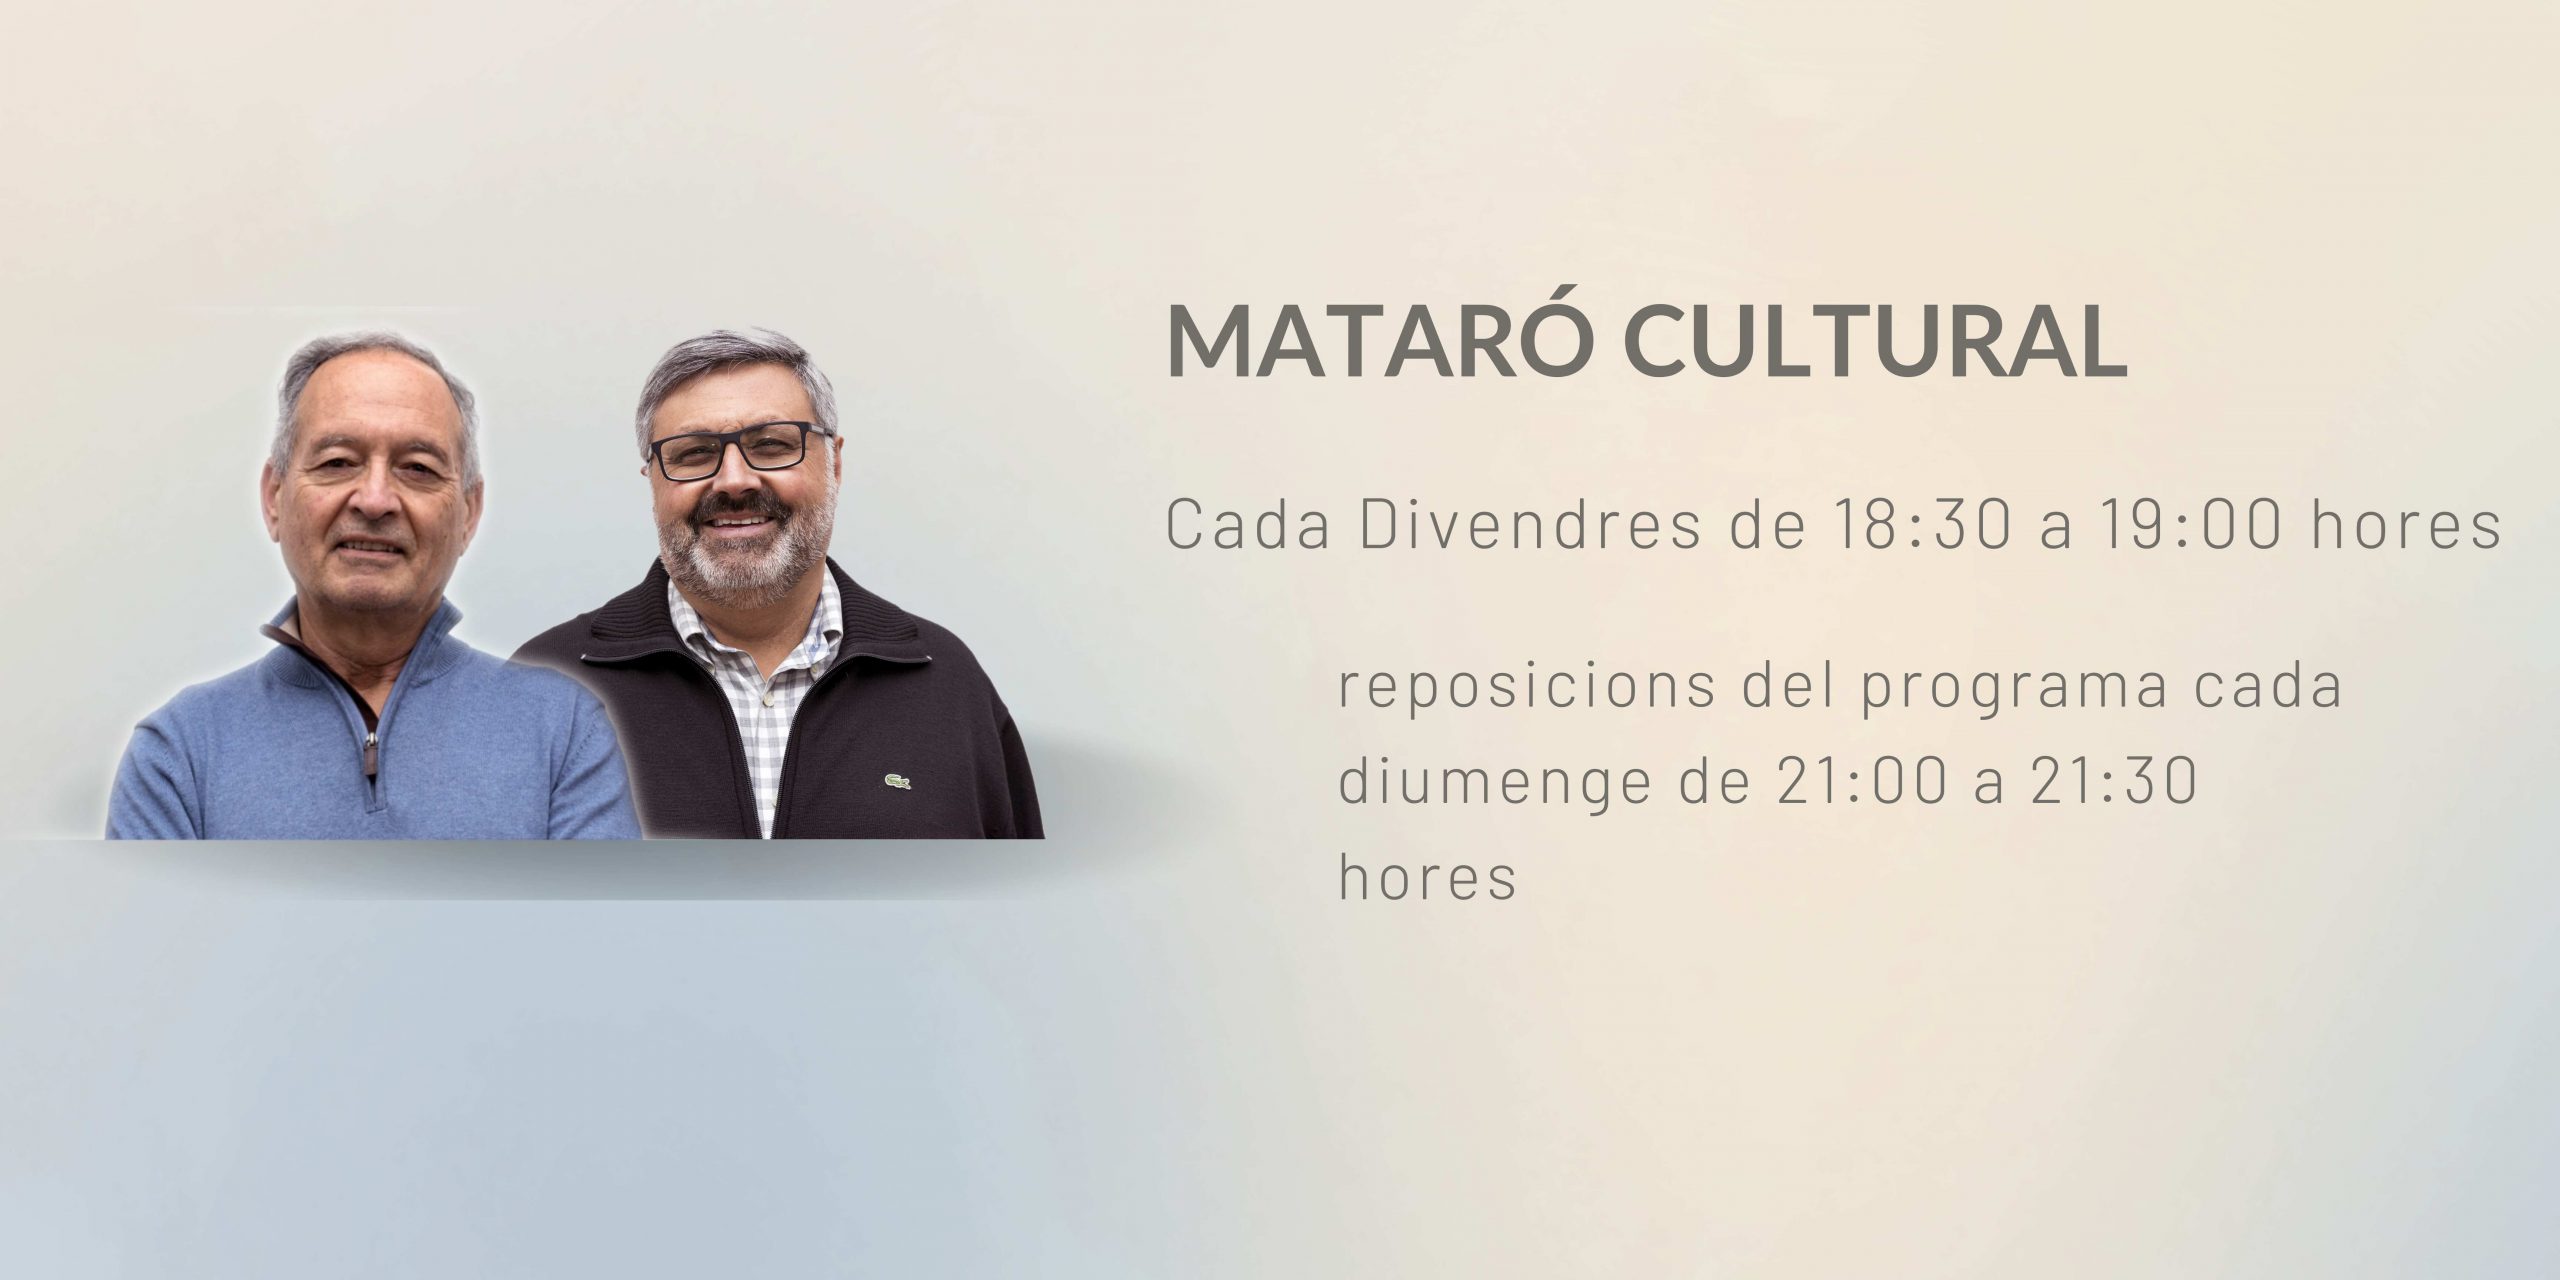 Mataró Cultural